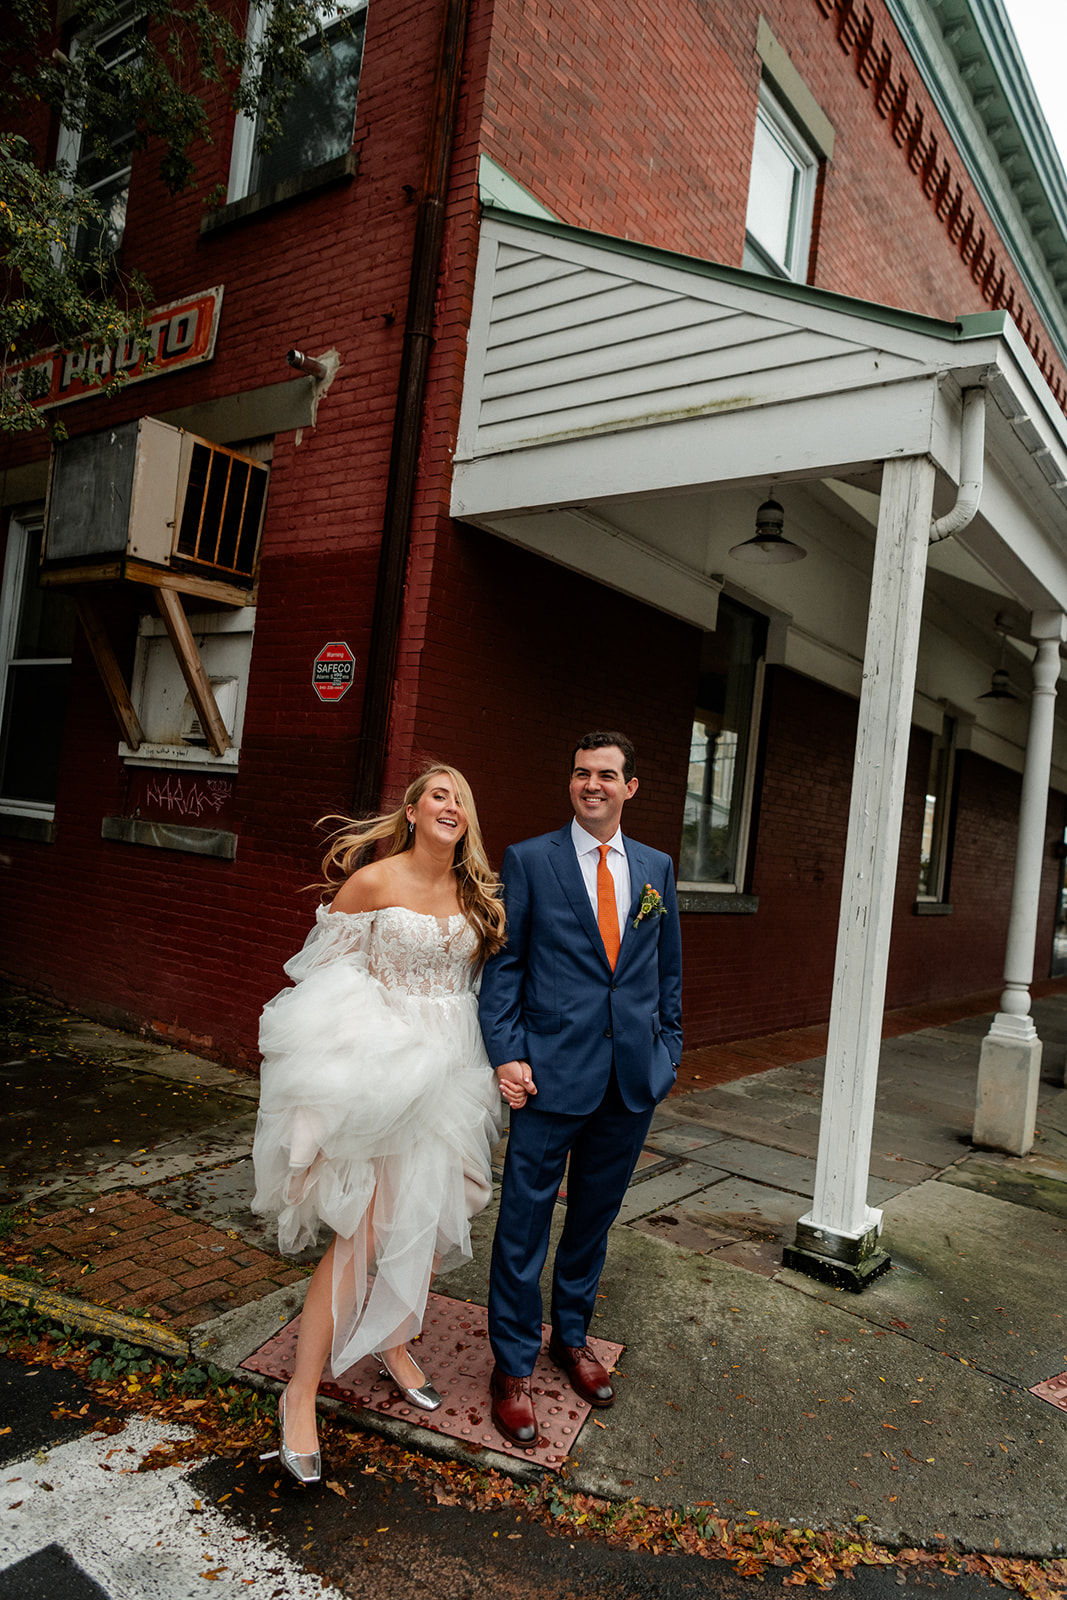 Senate Garage wedding Kingston NY Documentary Wedding Photography 